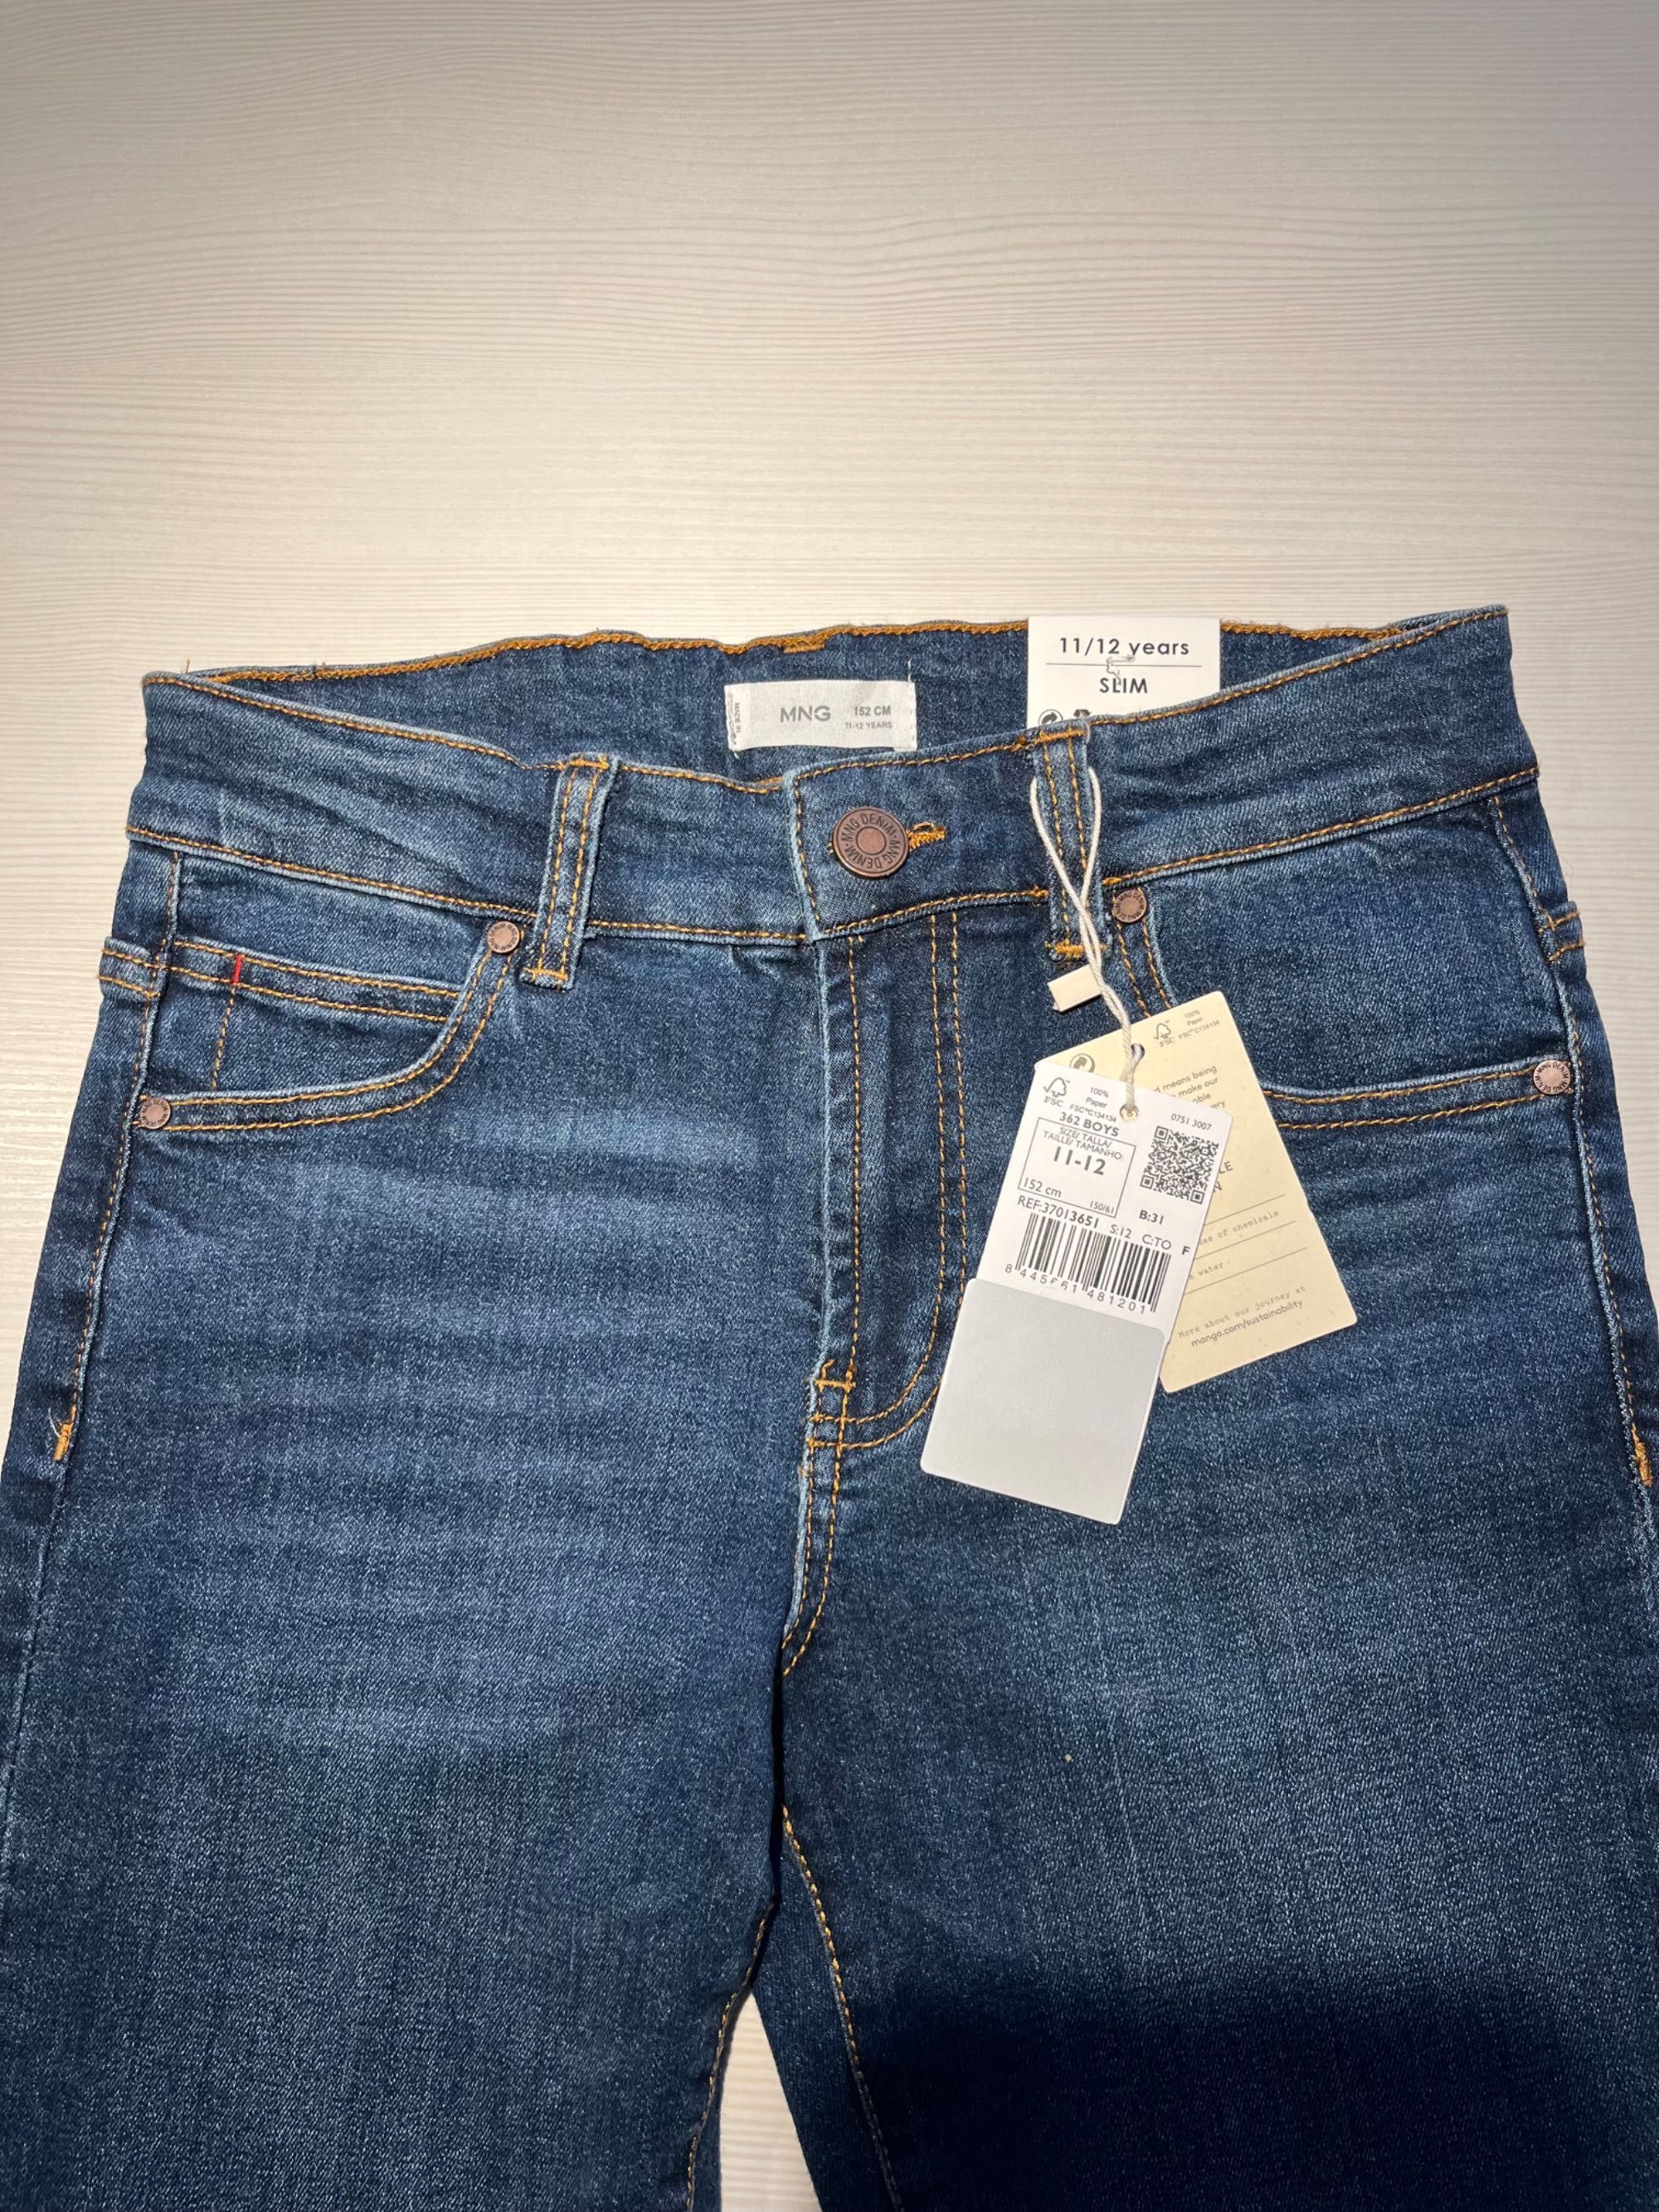 MANGO BOYS nowe jeansy slim 11/12 lat 152